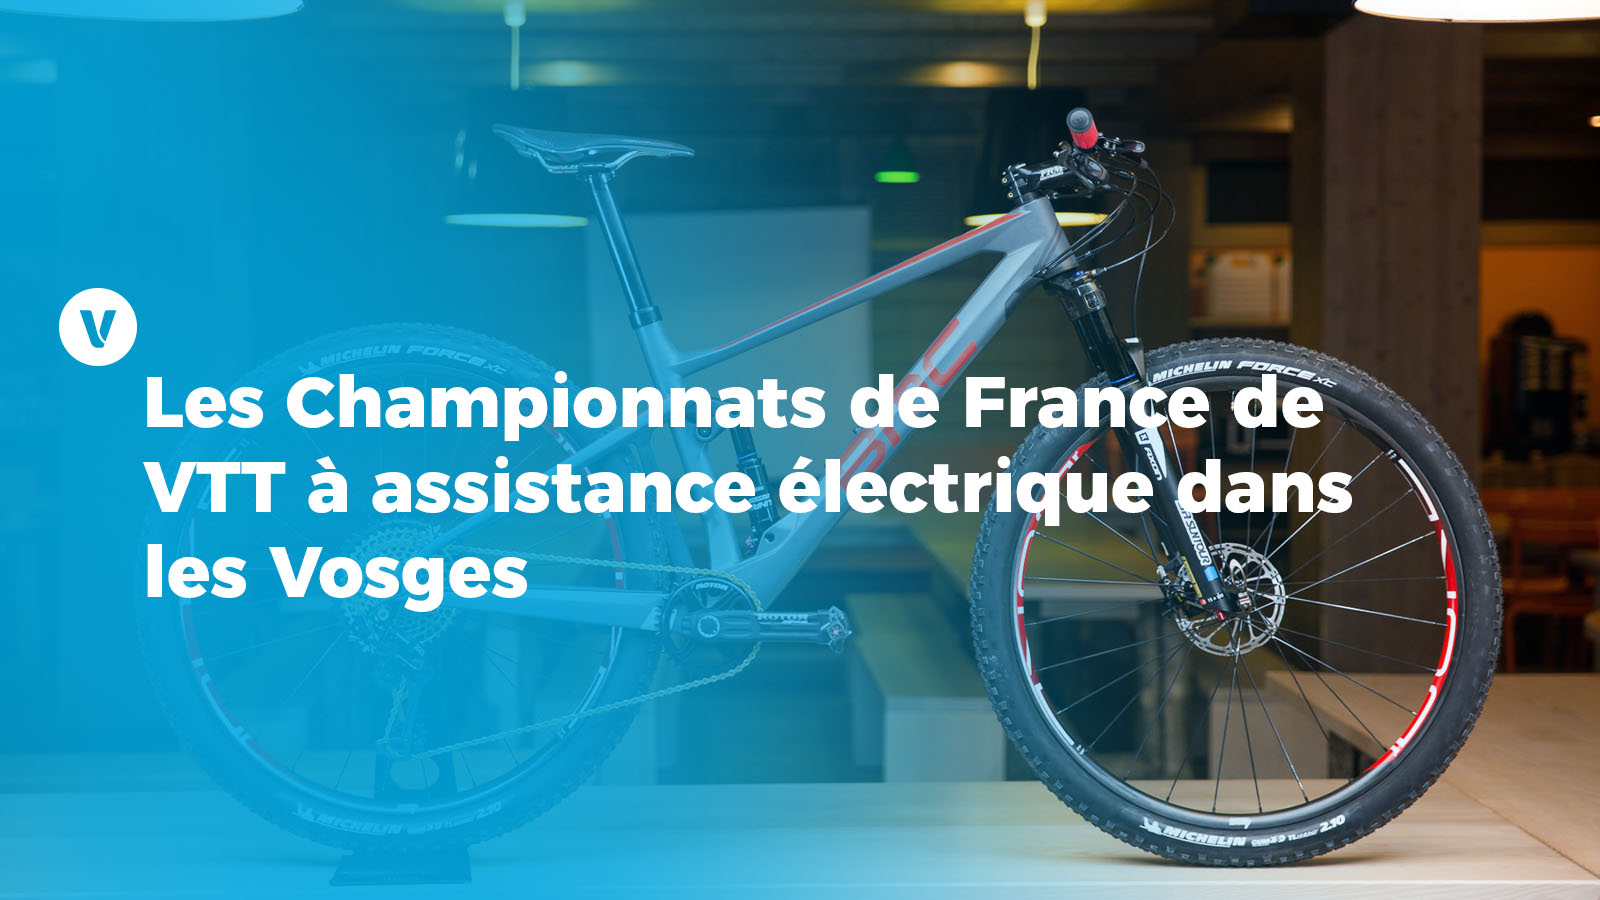 Les Championnats de France de VTT à assistance électrique dans les Vosges